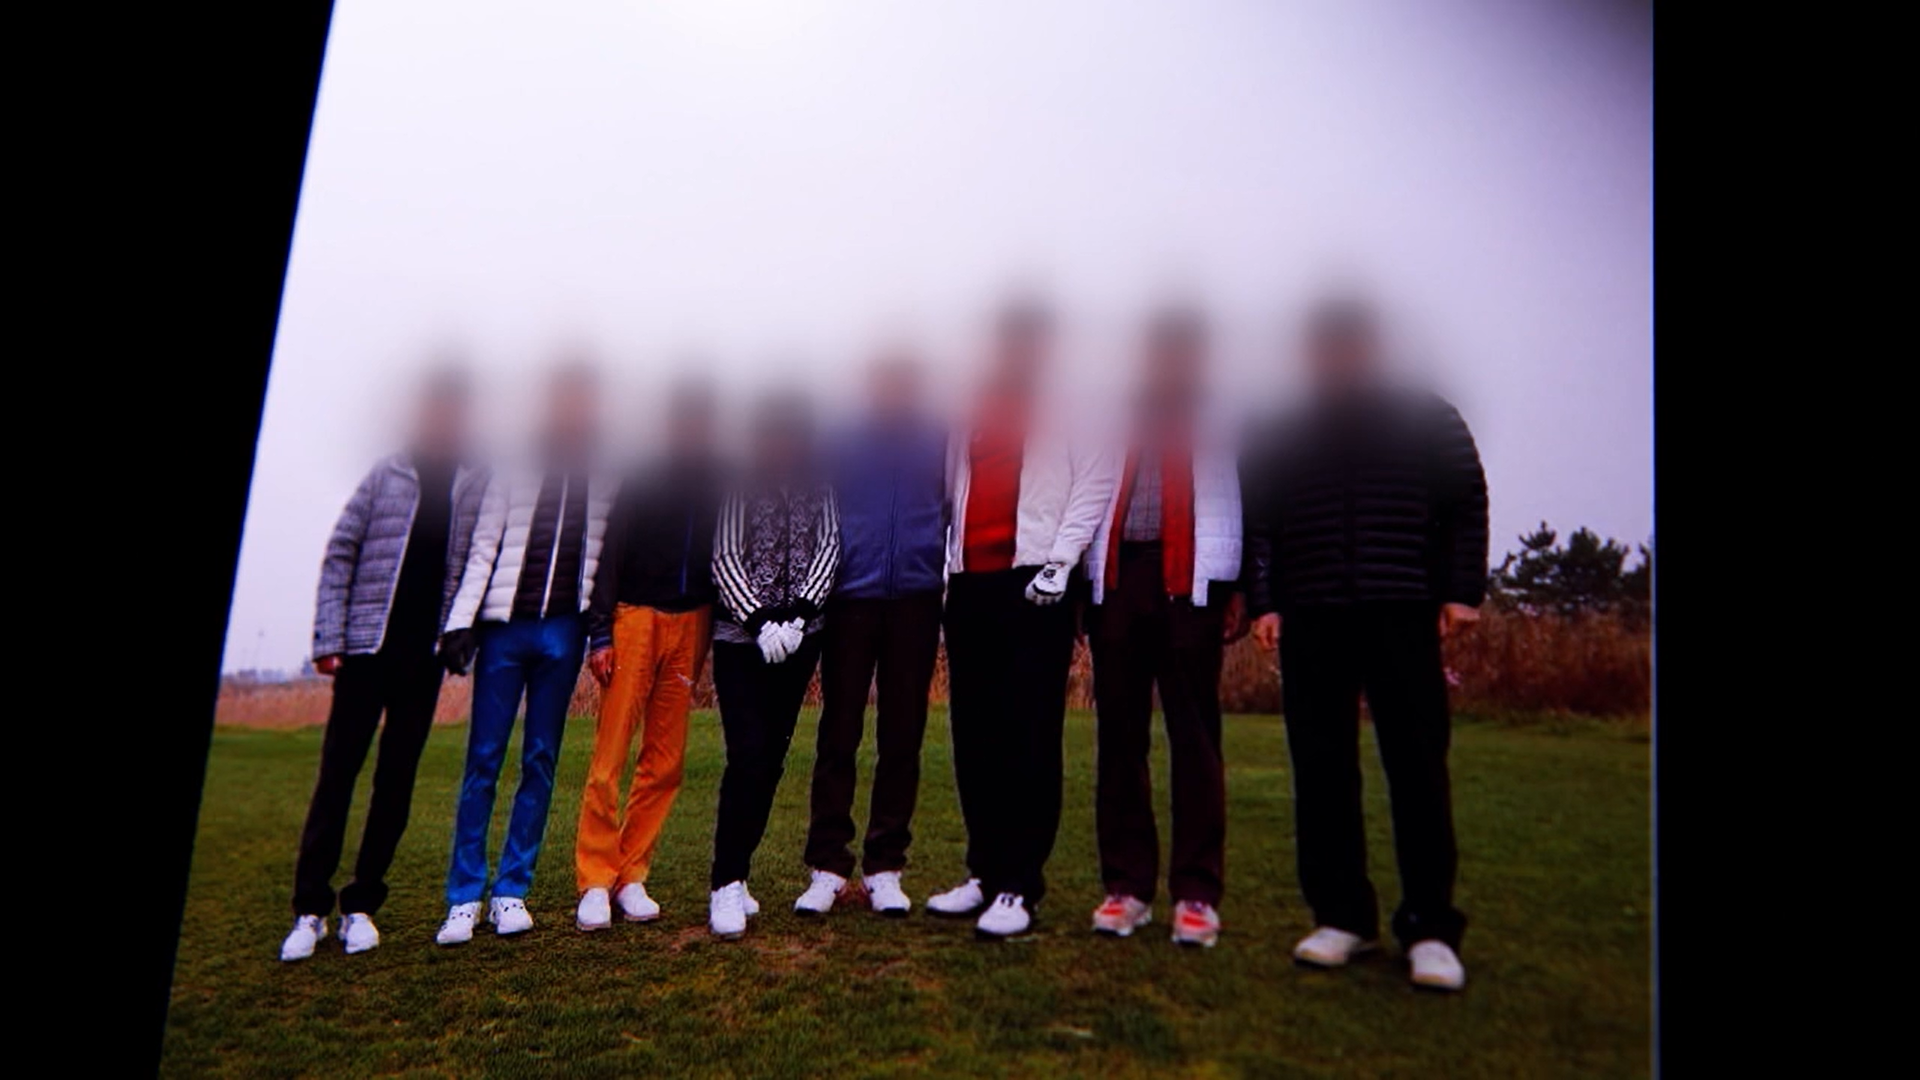 KBS 탐사보도부는 사교 모임 주선자 한 씨가 주선한 여러 골프장 모임의 사진을 입수했다. 해당 사진으로 유력 인사들 참석이 확인됐다.